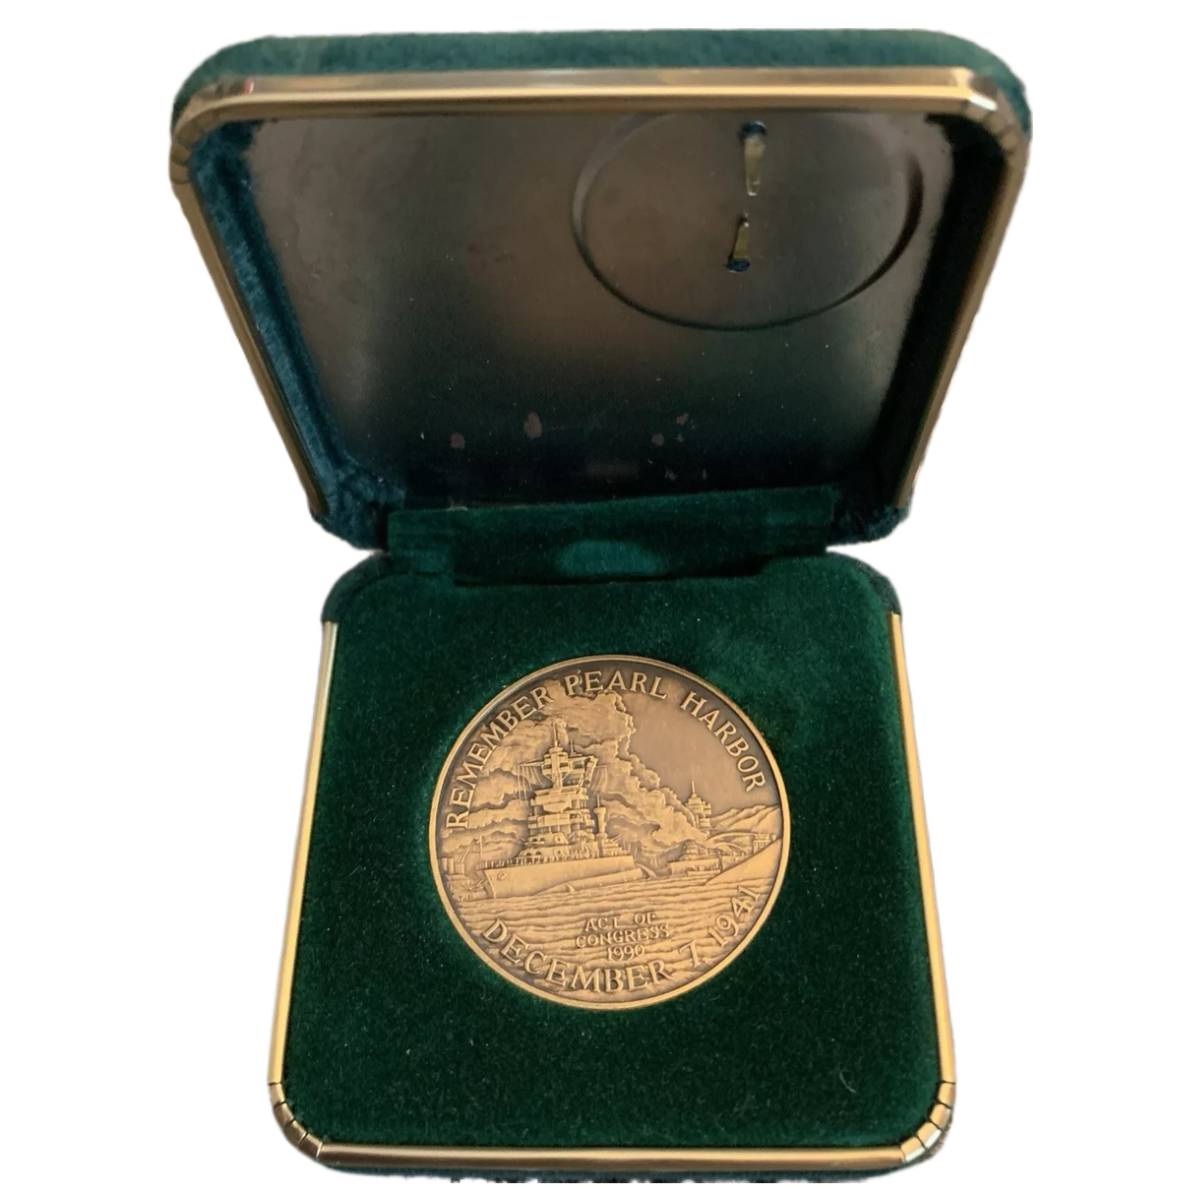 Pearl Harbor Commemorative Medal in Case